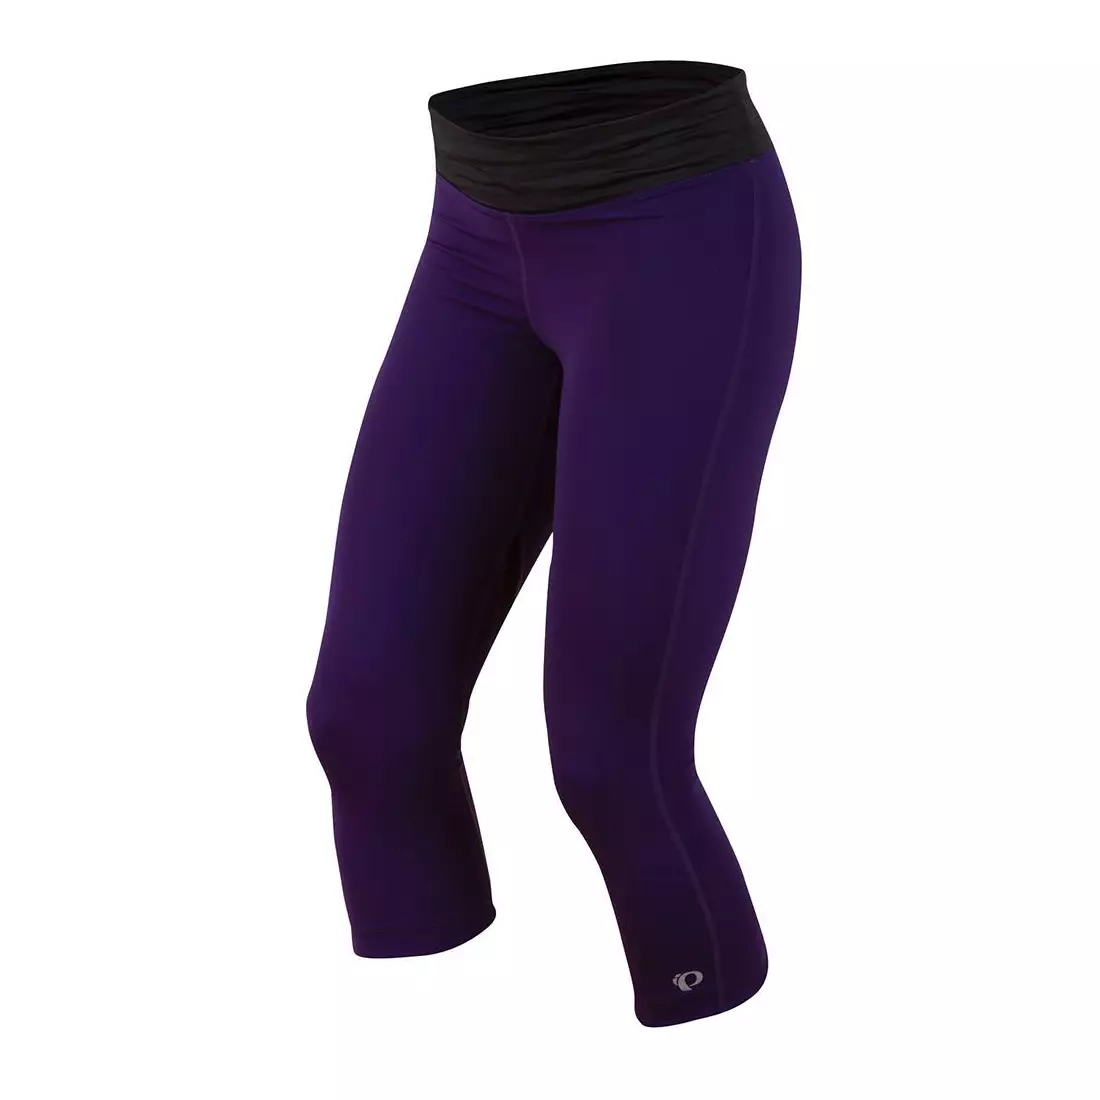 PEARL IZUMI - W's Fly 3/4 Tight 12211406-4GE - pantaloni scurți pentru alergare 3/4 pentru femei, culoare: Violet